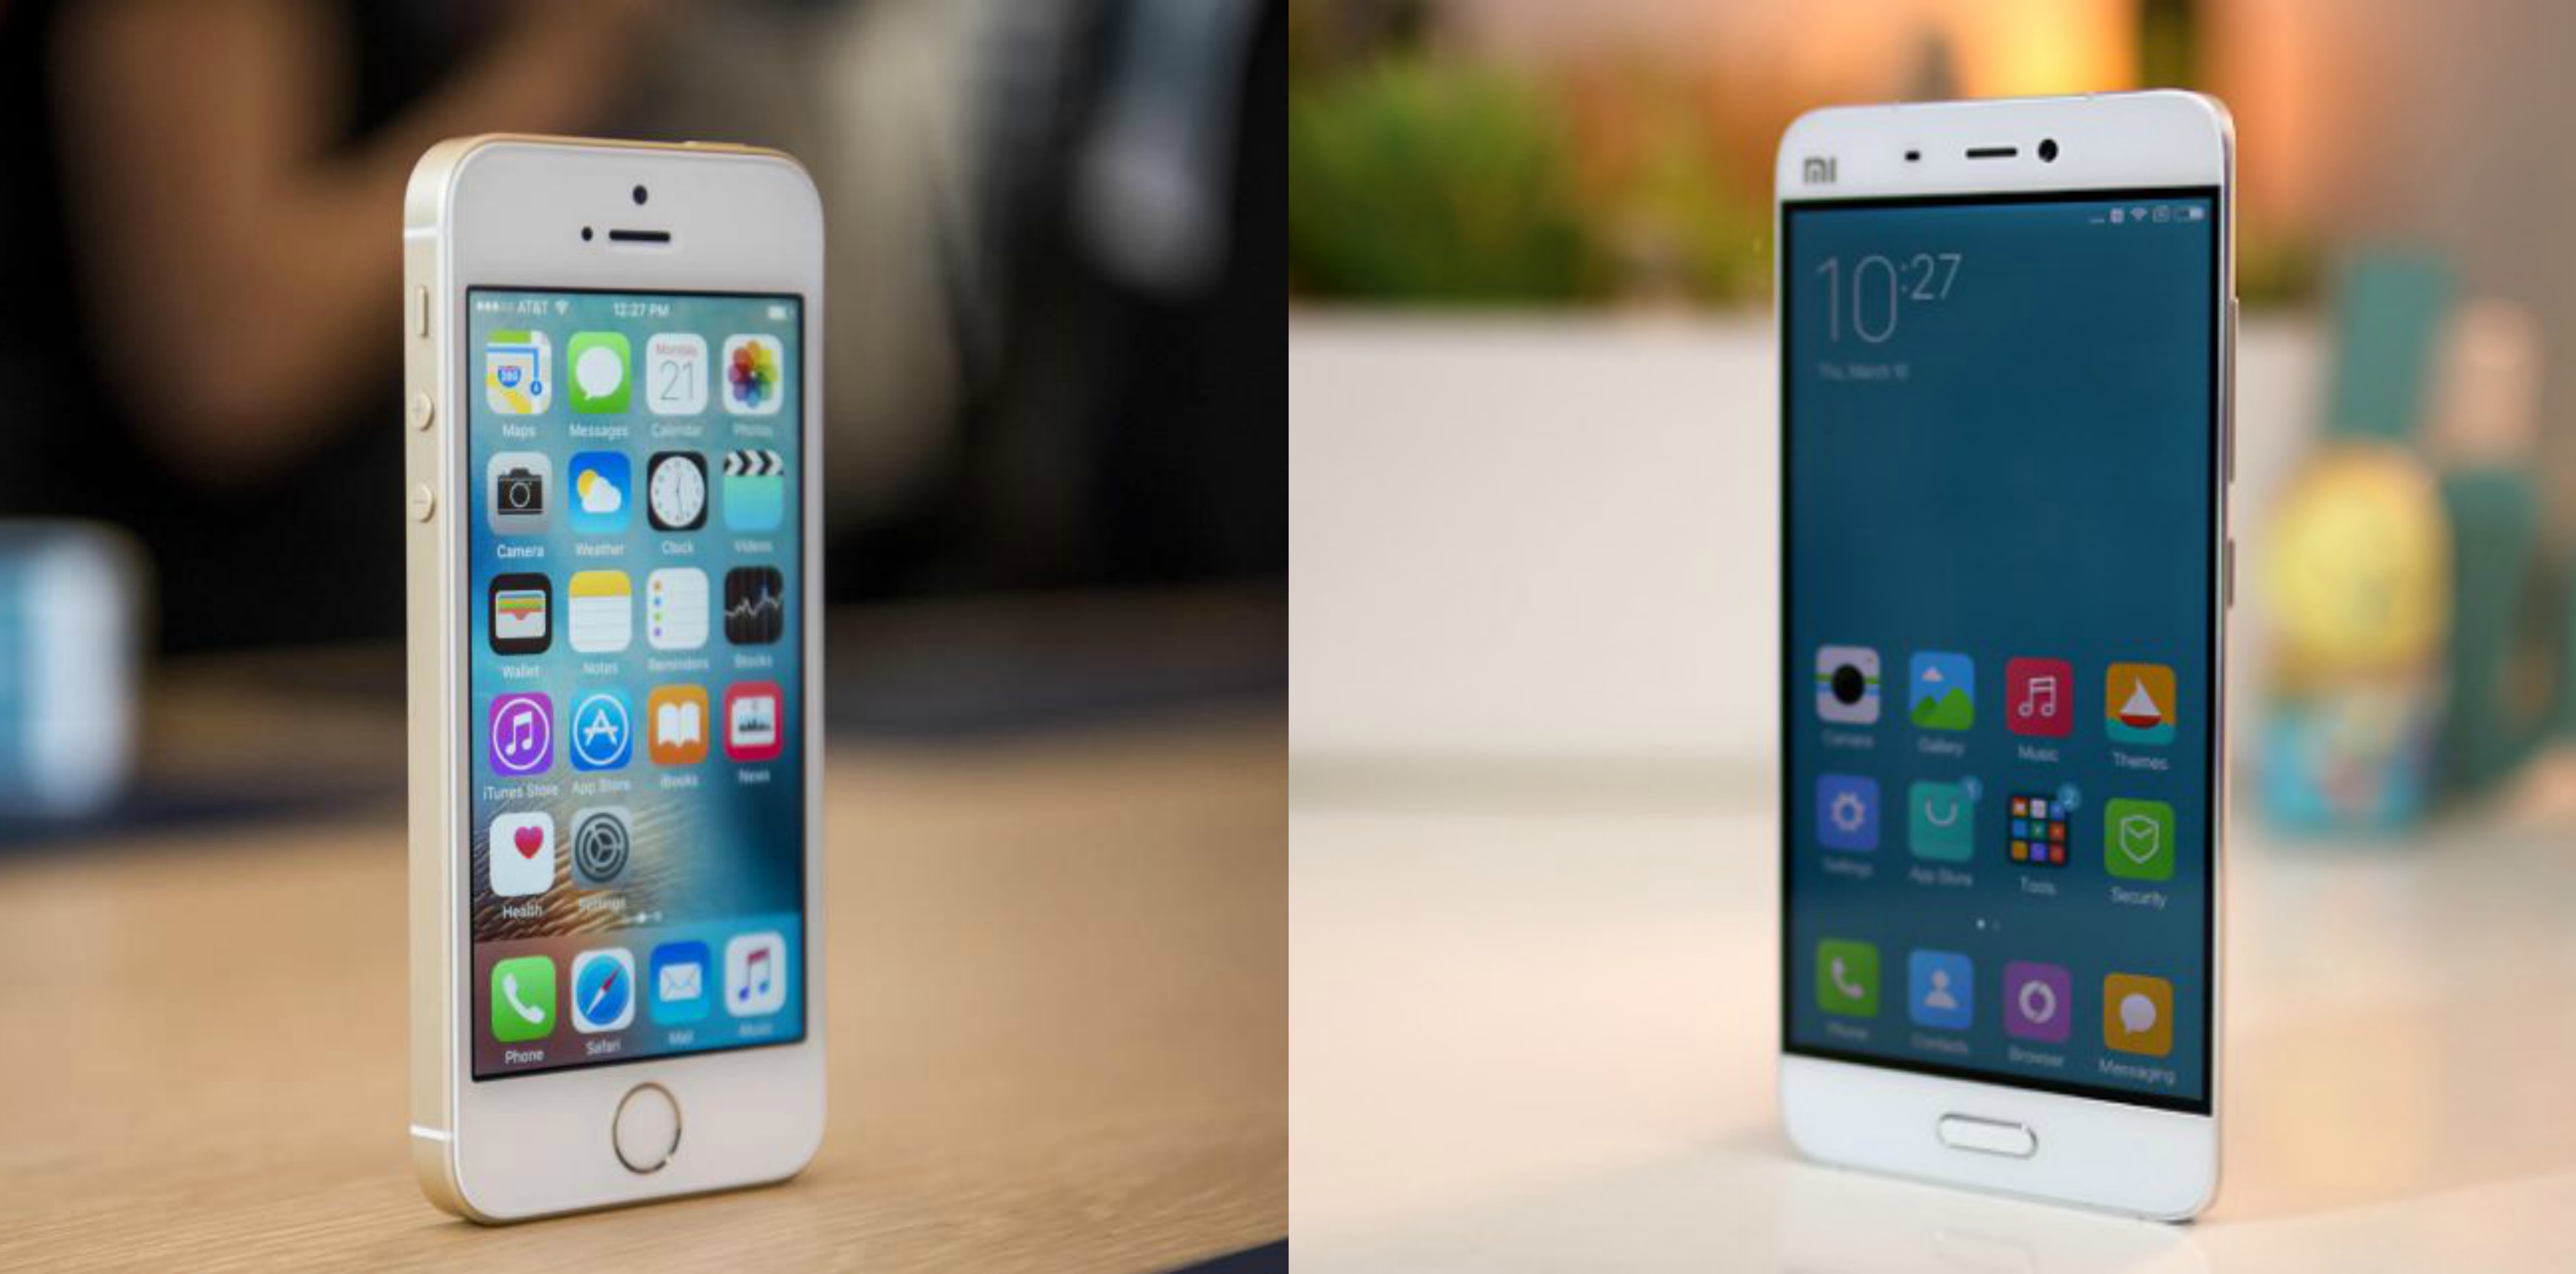 مقارنة بين هاتفي iPhone SE وXiaomi Mi 5